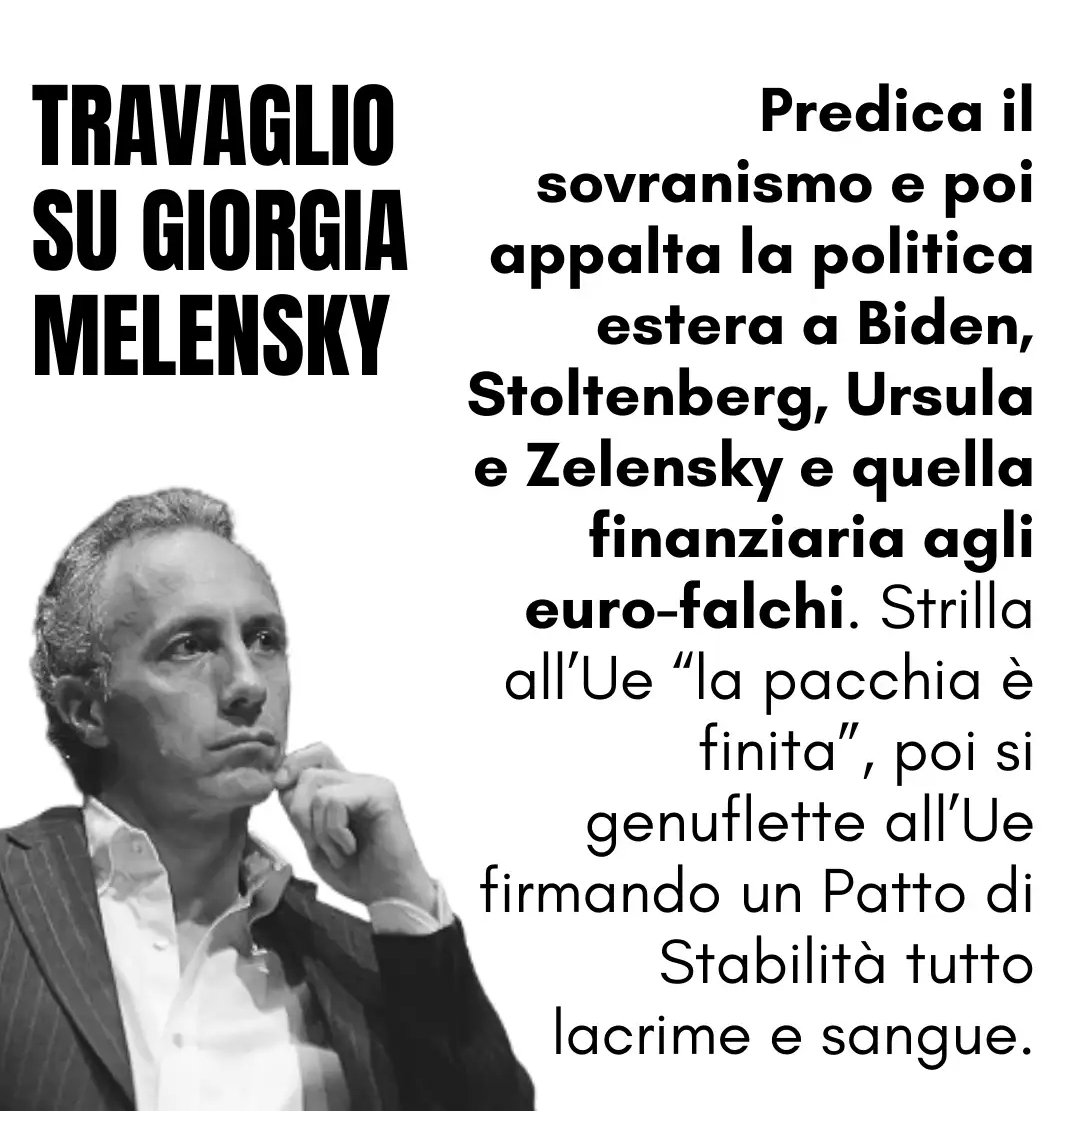 @FratellidItalia @GiorgiaMeloni La coerenza: